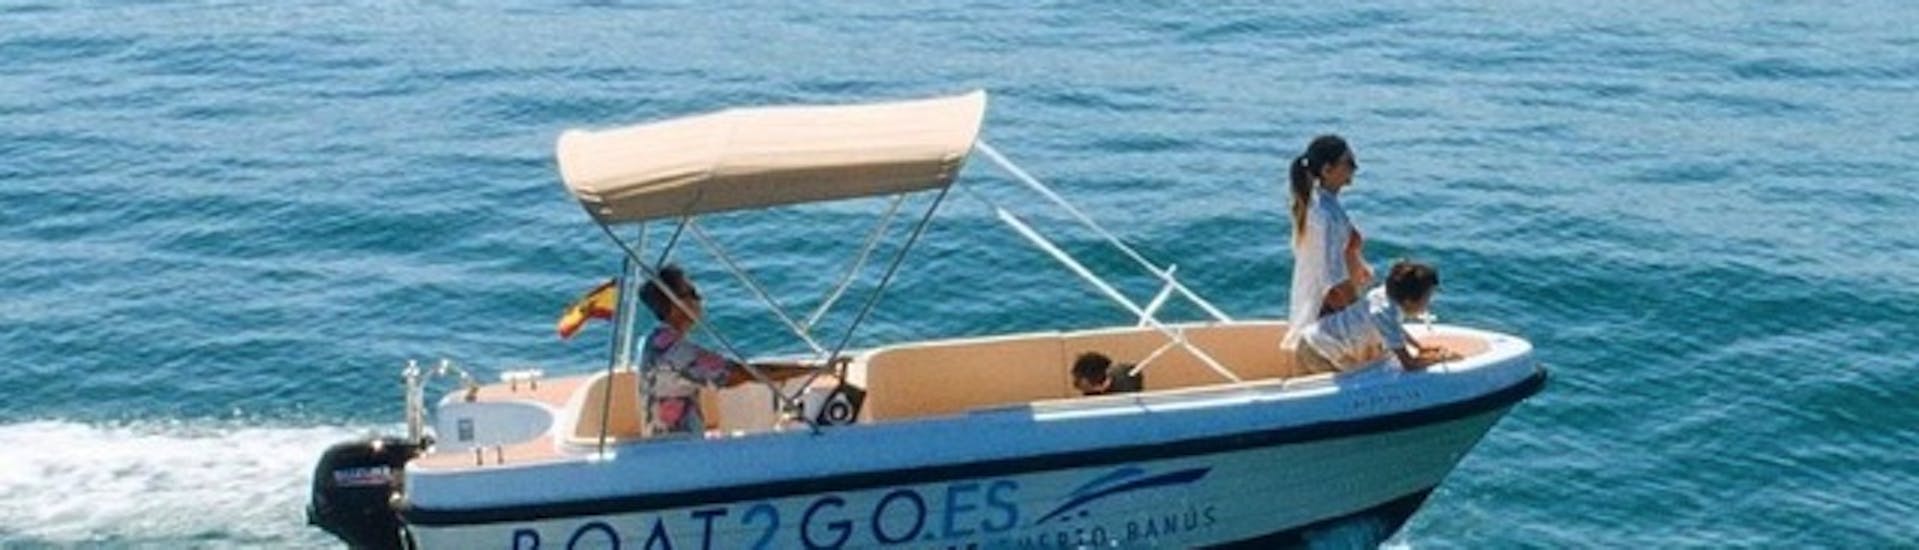 Des personnes profitent du beau temps sur un bateau de location Boat2Go à Marbella, Puerto Banús.